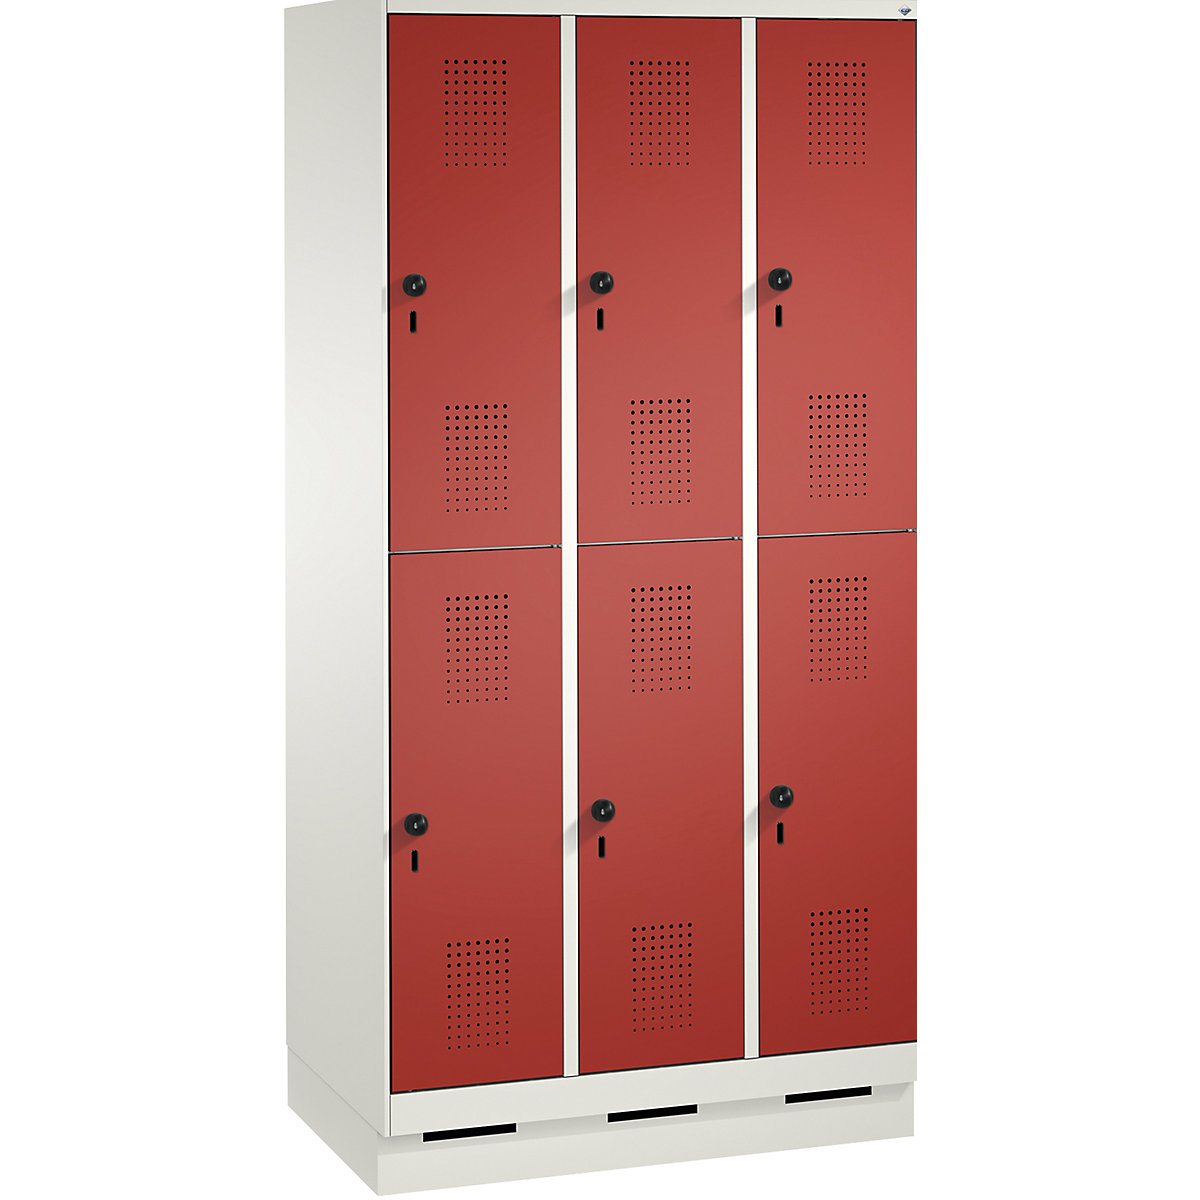 Penderie sur socle EVOLO à deux étages – C+P, 3 compartiments, 2 casiers chacun, largeur compartiments 300 mm, blanc trafic / rouge feu-11